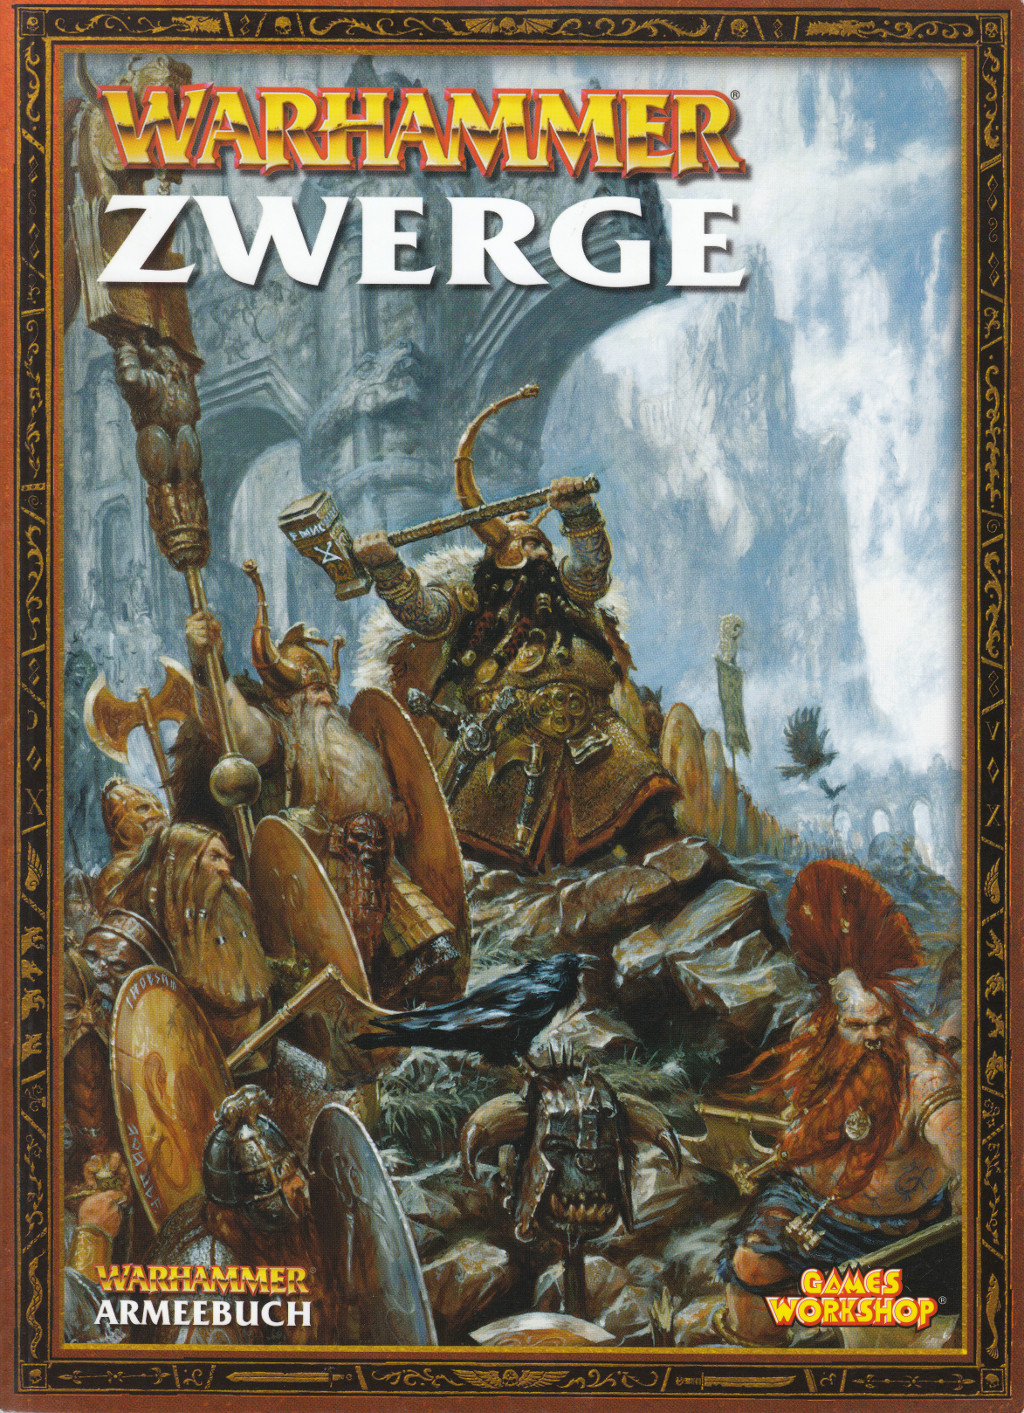 Warhammer Zwerge Armeebuch Pdf Download